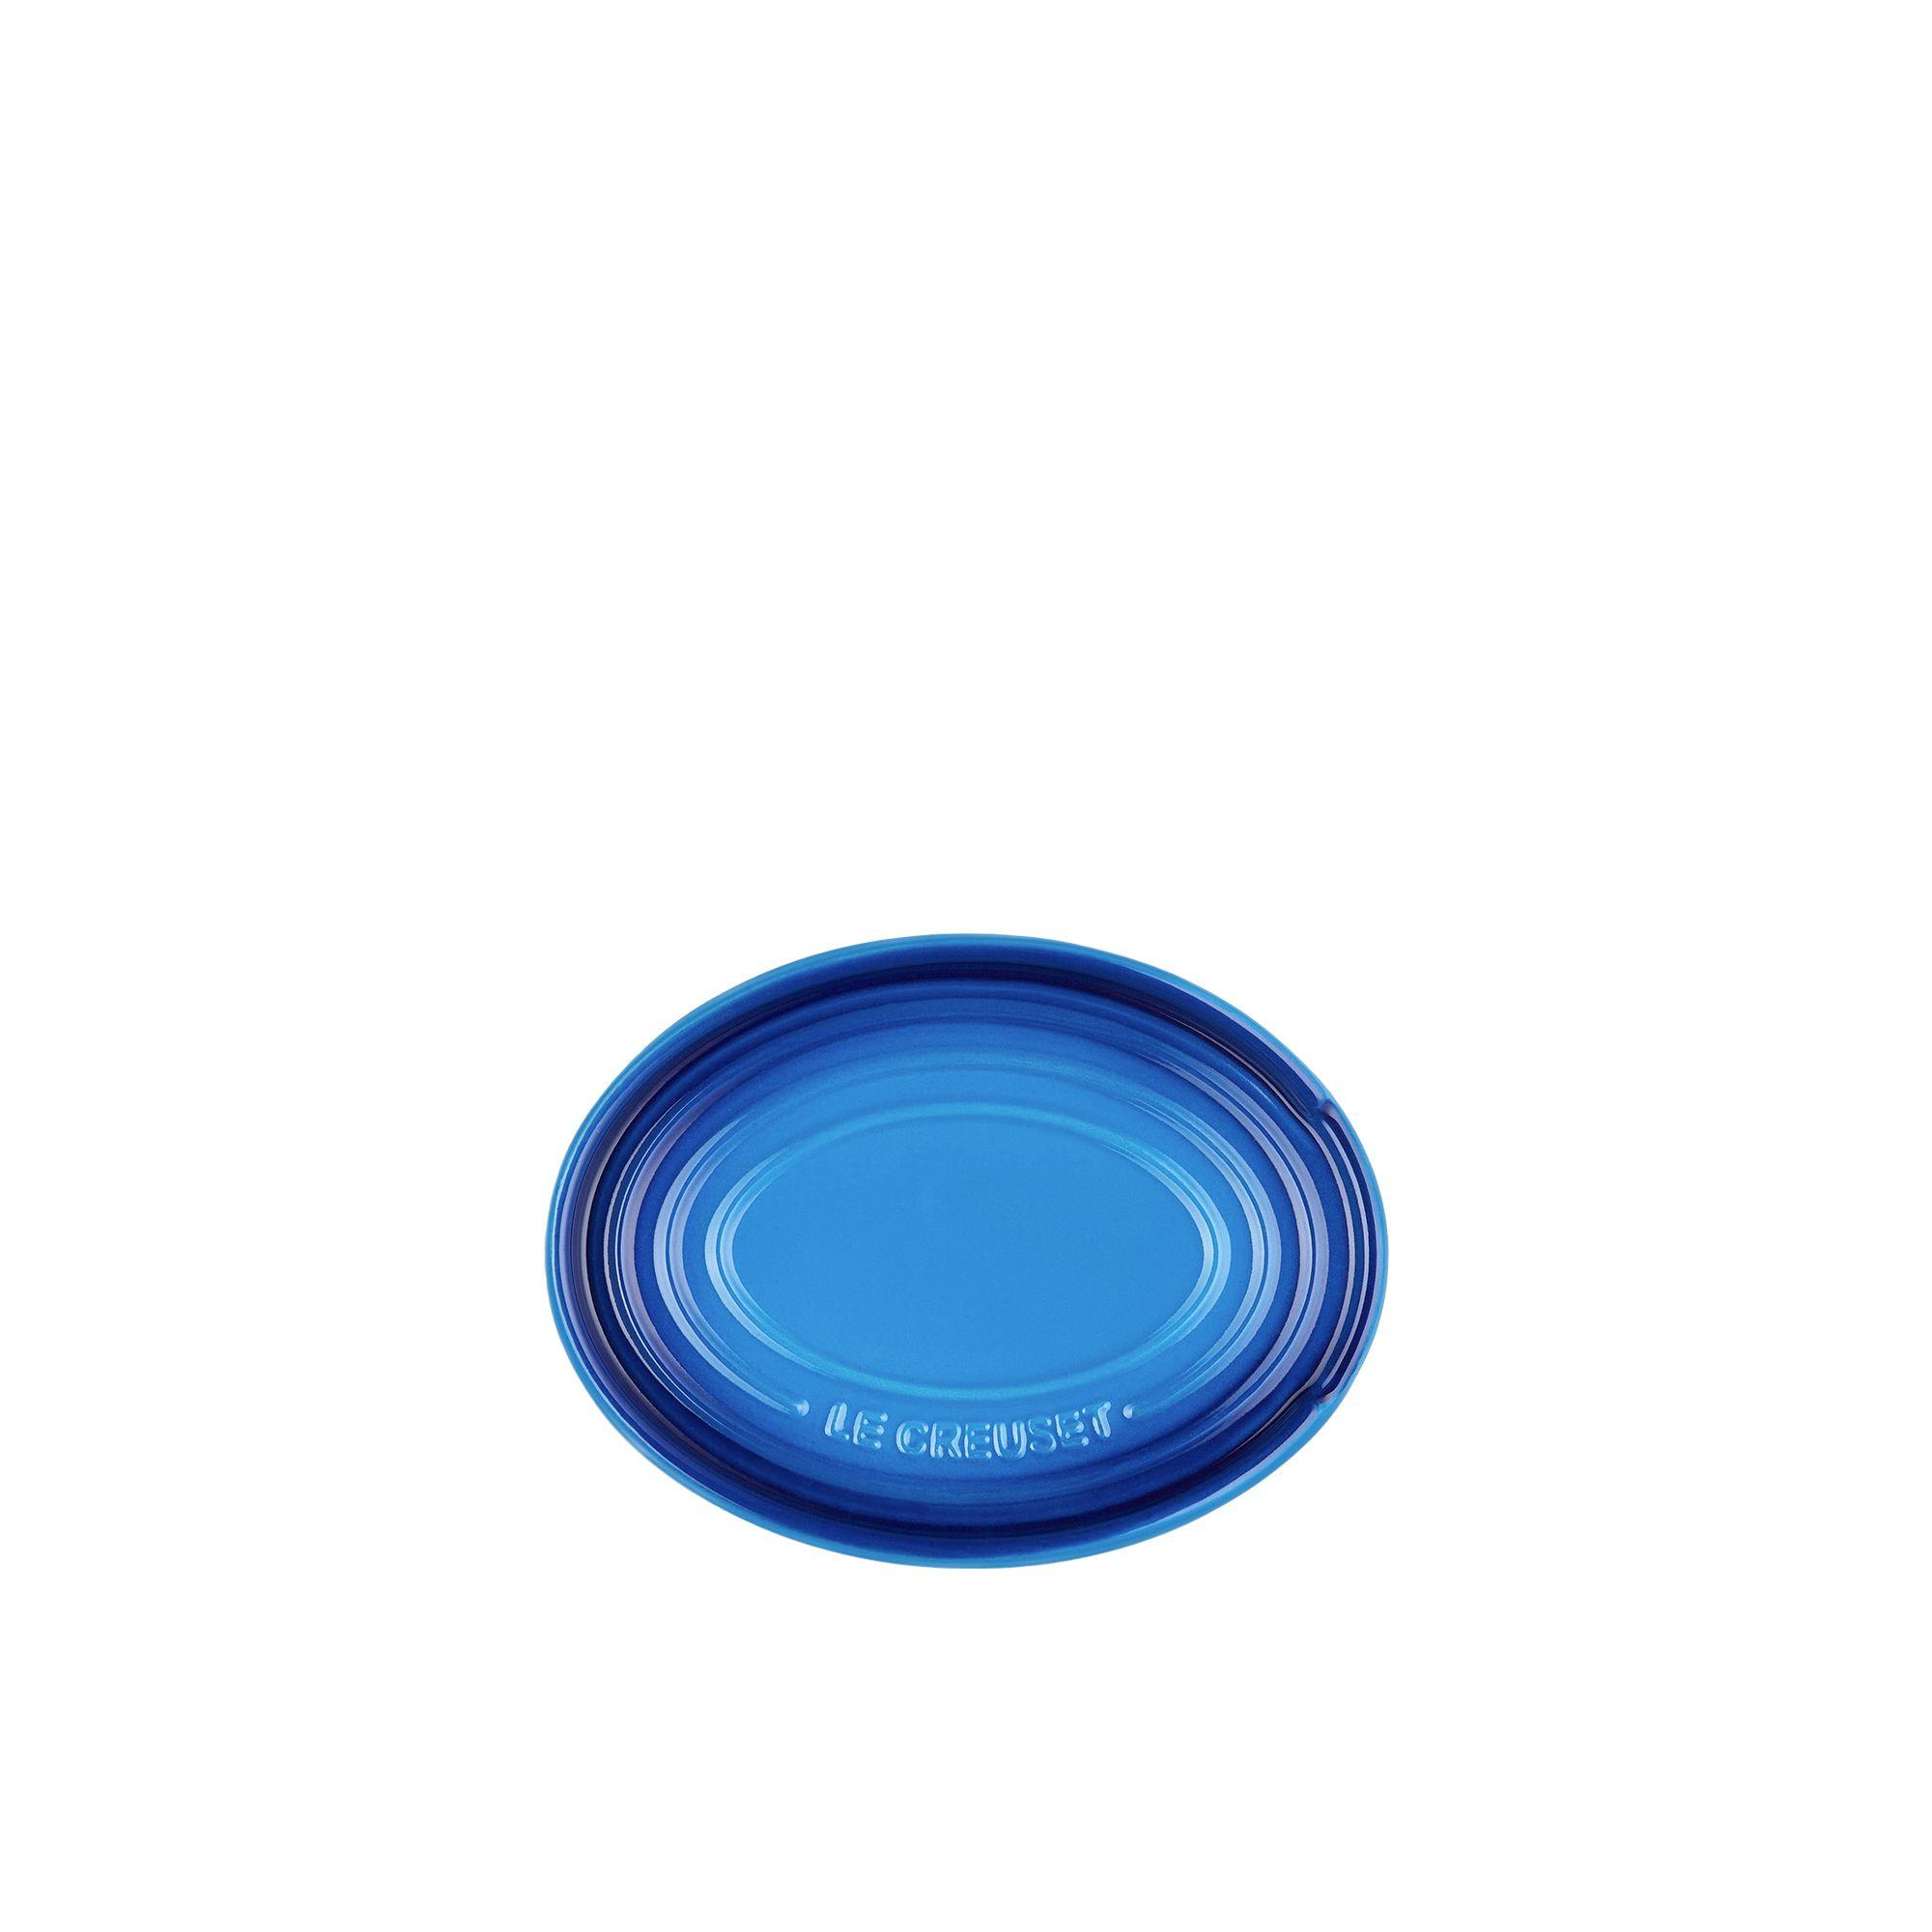 Le Creuset Stoneware Spoon Rest Azure Blue Image 3